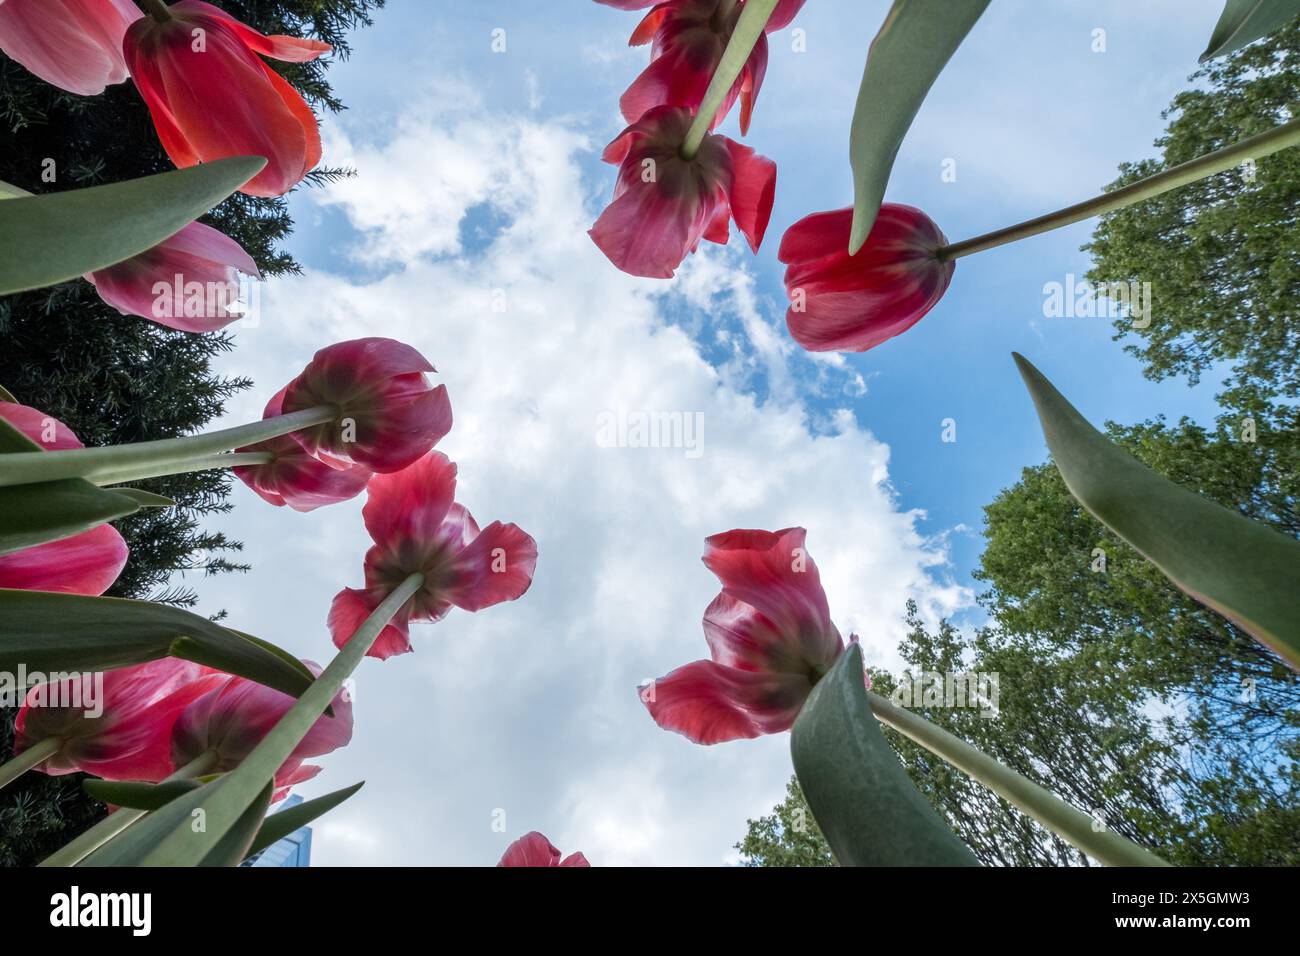 Un gruppo di tulipani rossi è in primo piano in un cielo blu. I fiori sono disposti in cerchio, con alcuni che si sovrappongono l'uno all'altro Foto Stock